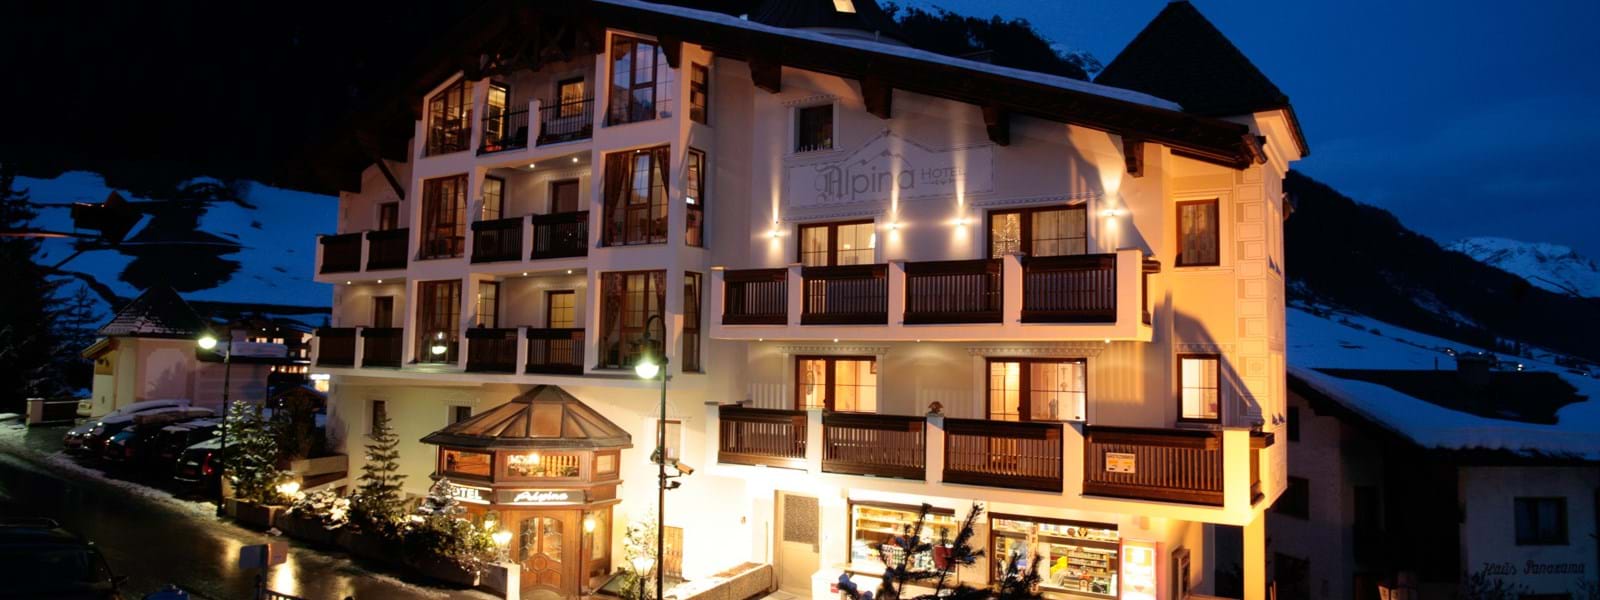 Hotel Alpina i - Skiferie til Østrig - nu